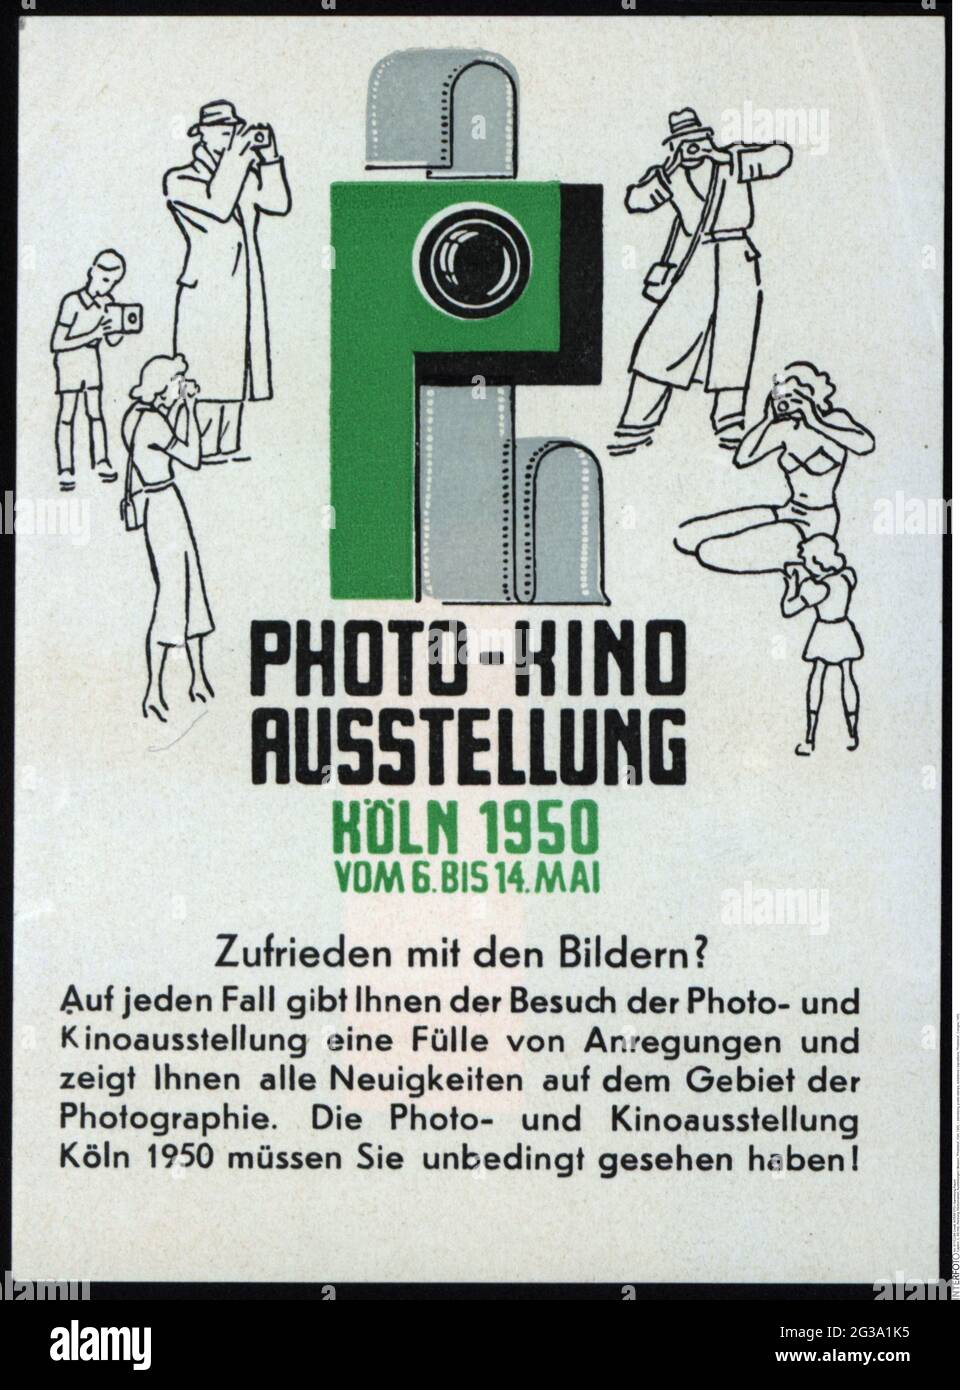 Publicité, timbres-affiches, expositions / expositions, « Photokina », Cologne, 1950, INFO-AUTORISATION-DROITS-SUPPLÉMENTAIRES-NON-DISPONIBLE Banque D'Images